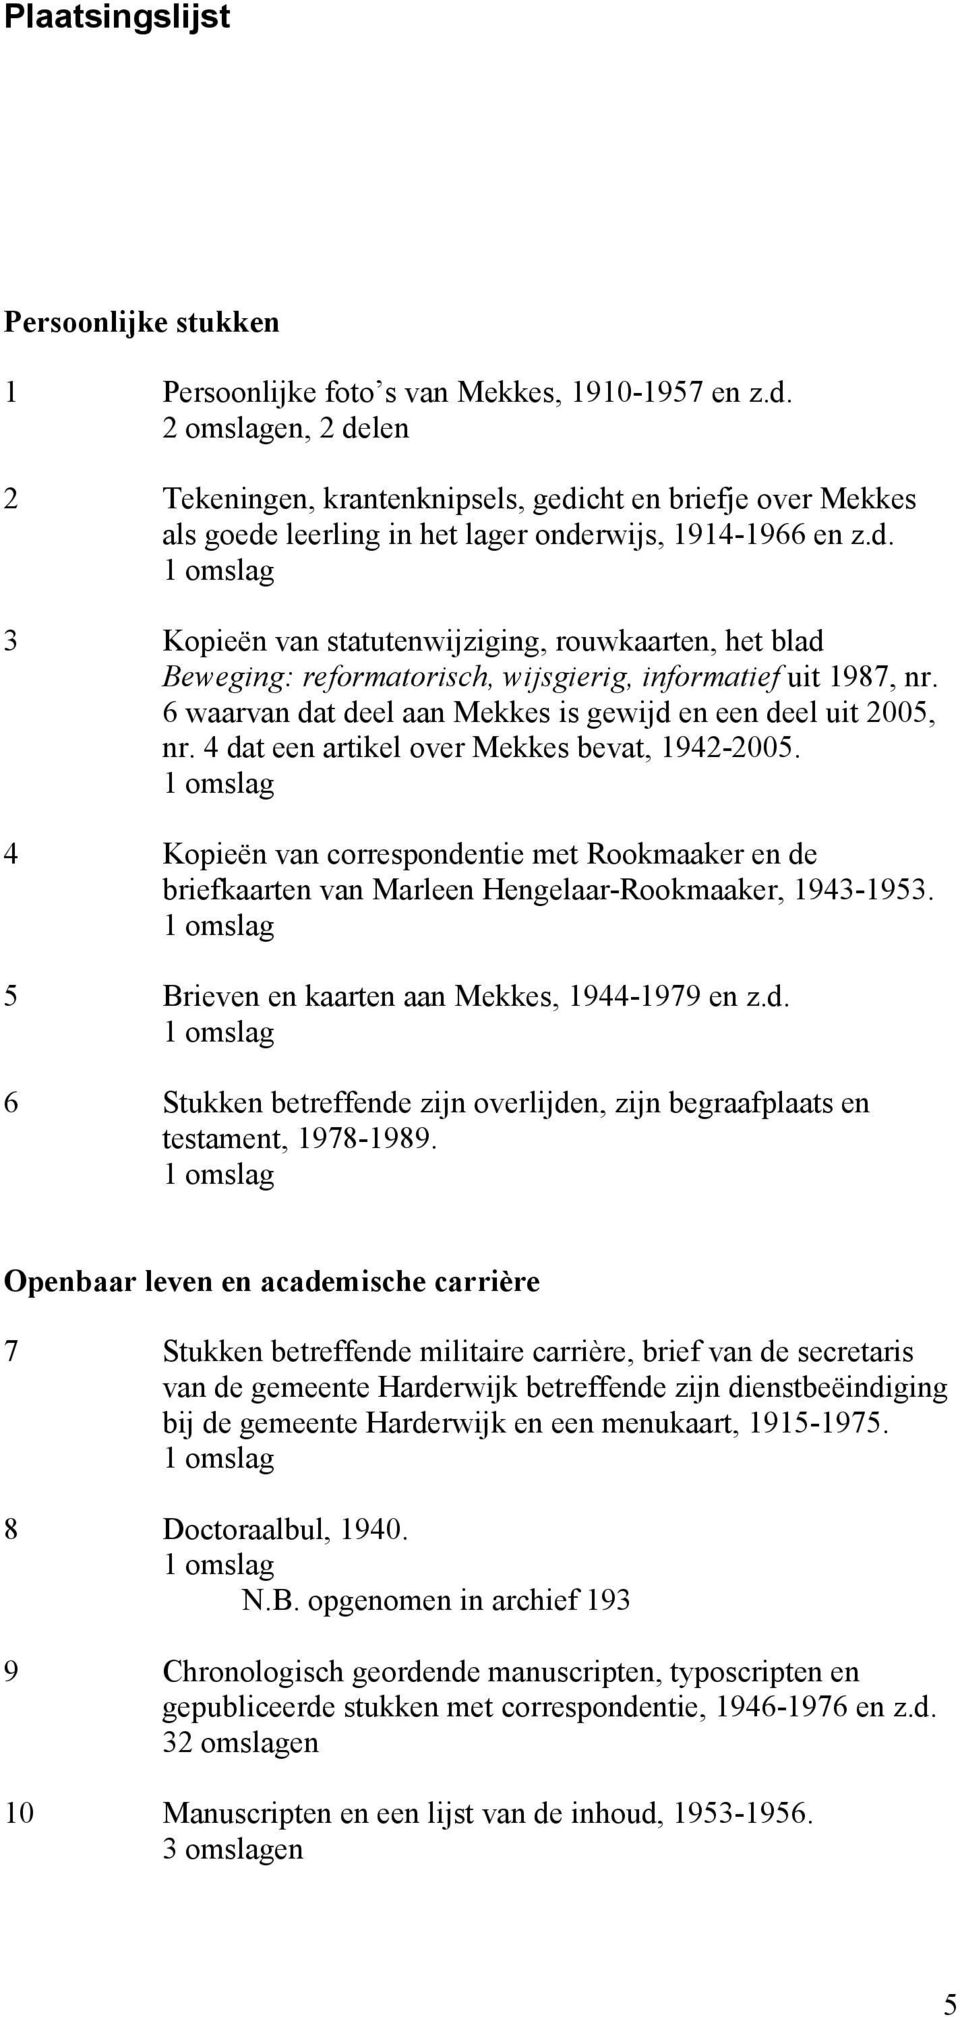 6 waarvan dat deel aan Mekkes is gewijd en een deel uit 2005, nr. 4 dat een artikel over Mekkes bevat, 1942-2005.